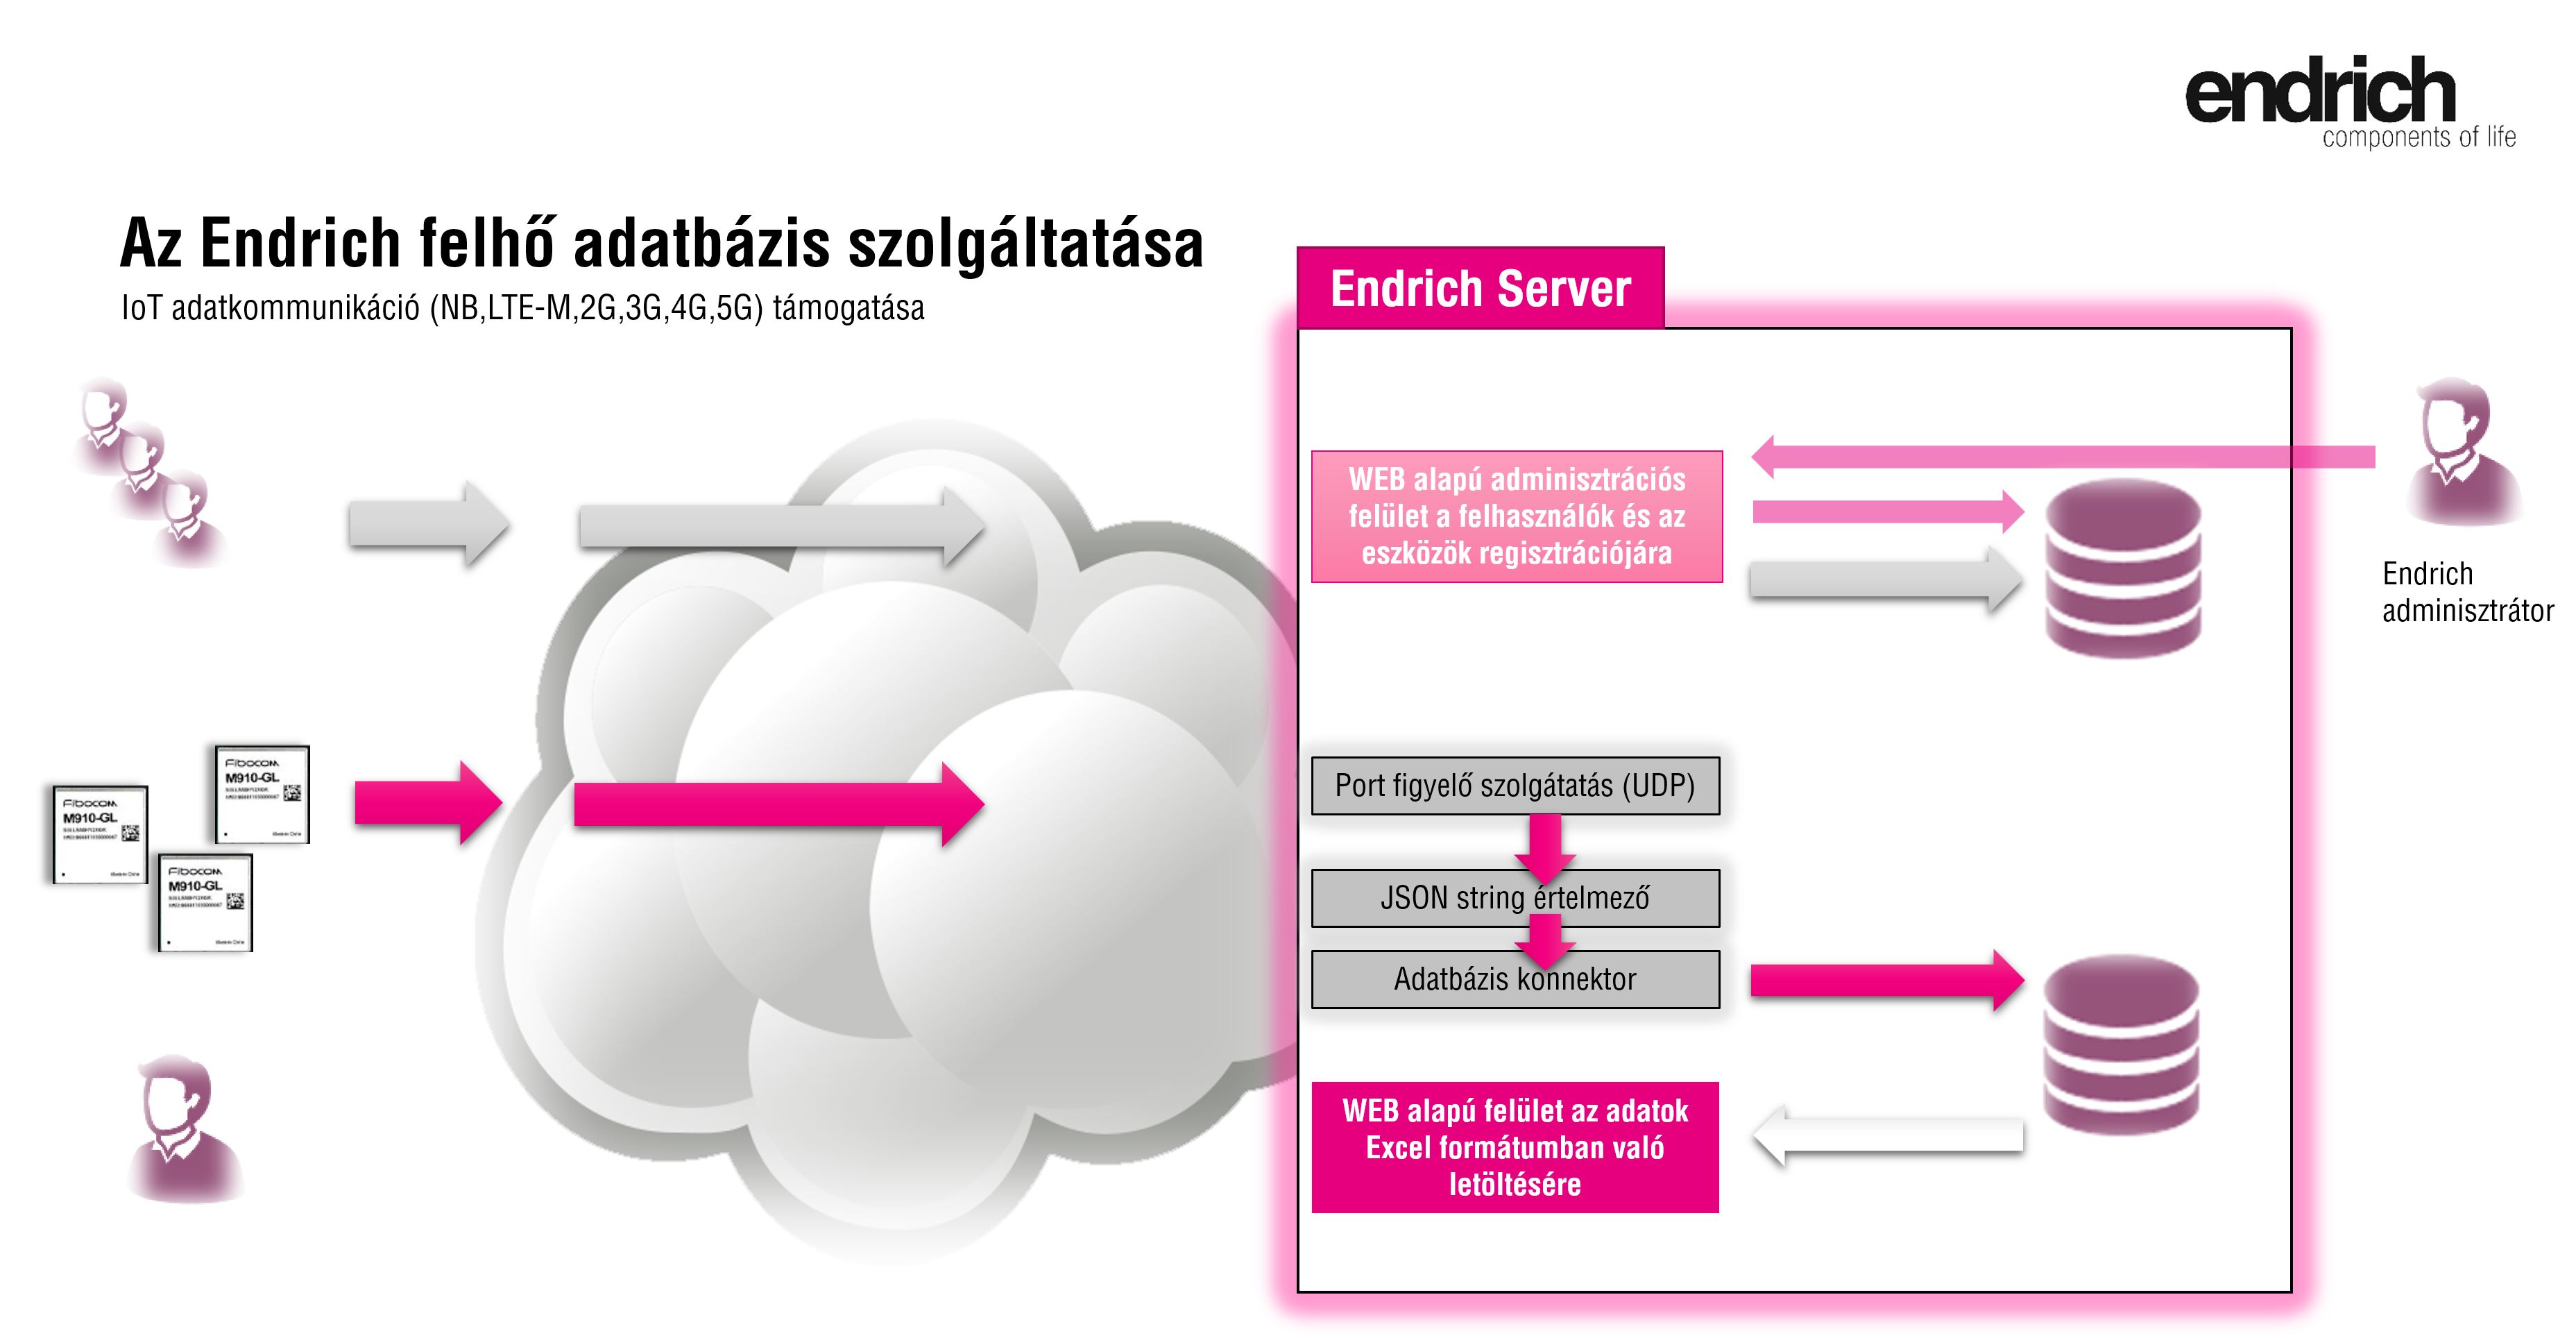 9| Endrich Cloud DataBase szolgáltatás